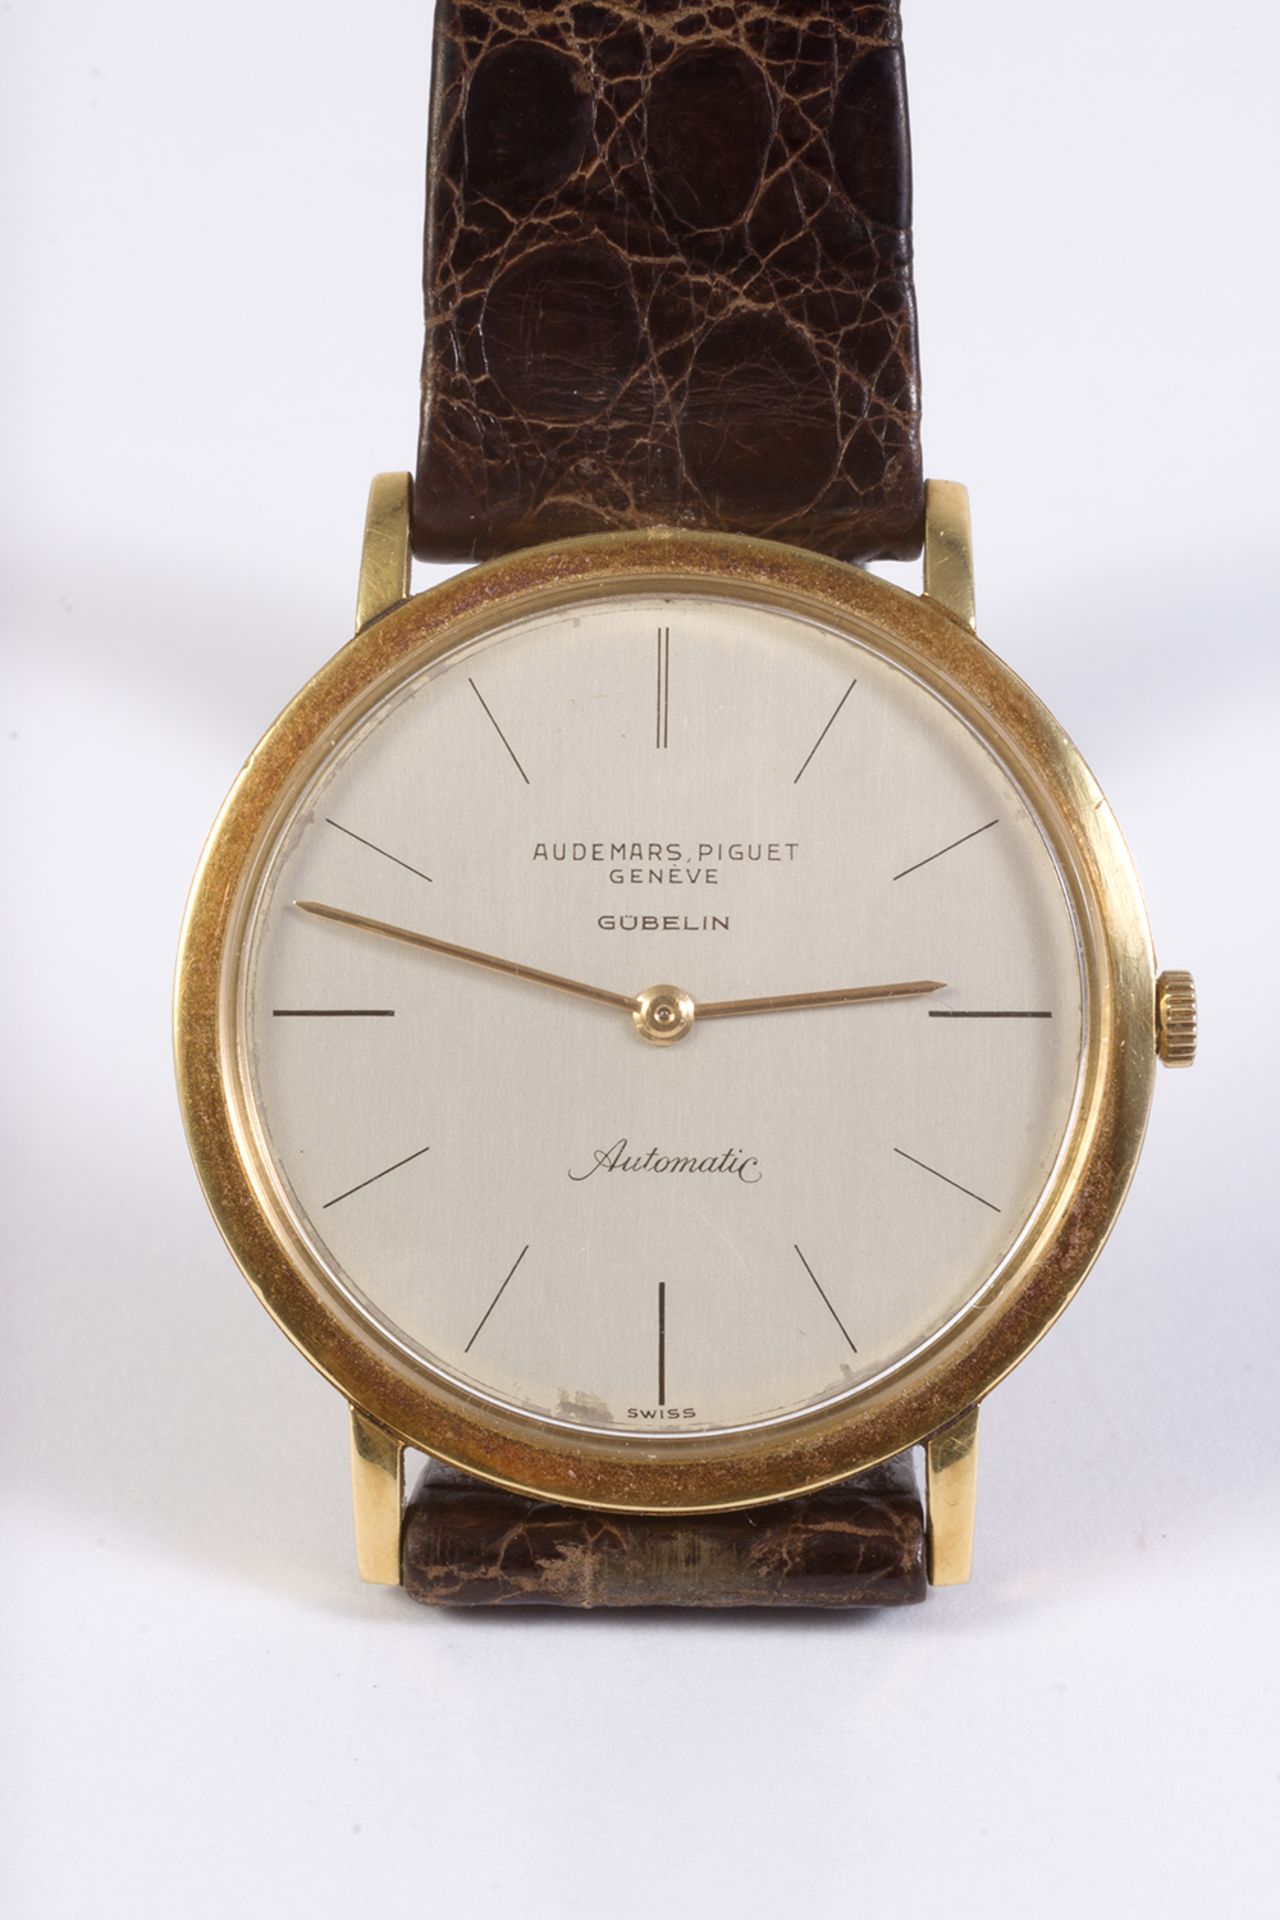 Reloj de pulsera Audemars Piguet, modelo Gübelin, en oro y correa de piel. - Image 4 of 6